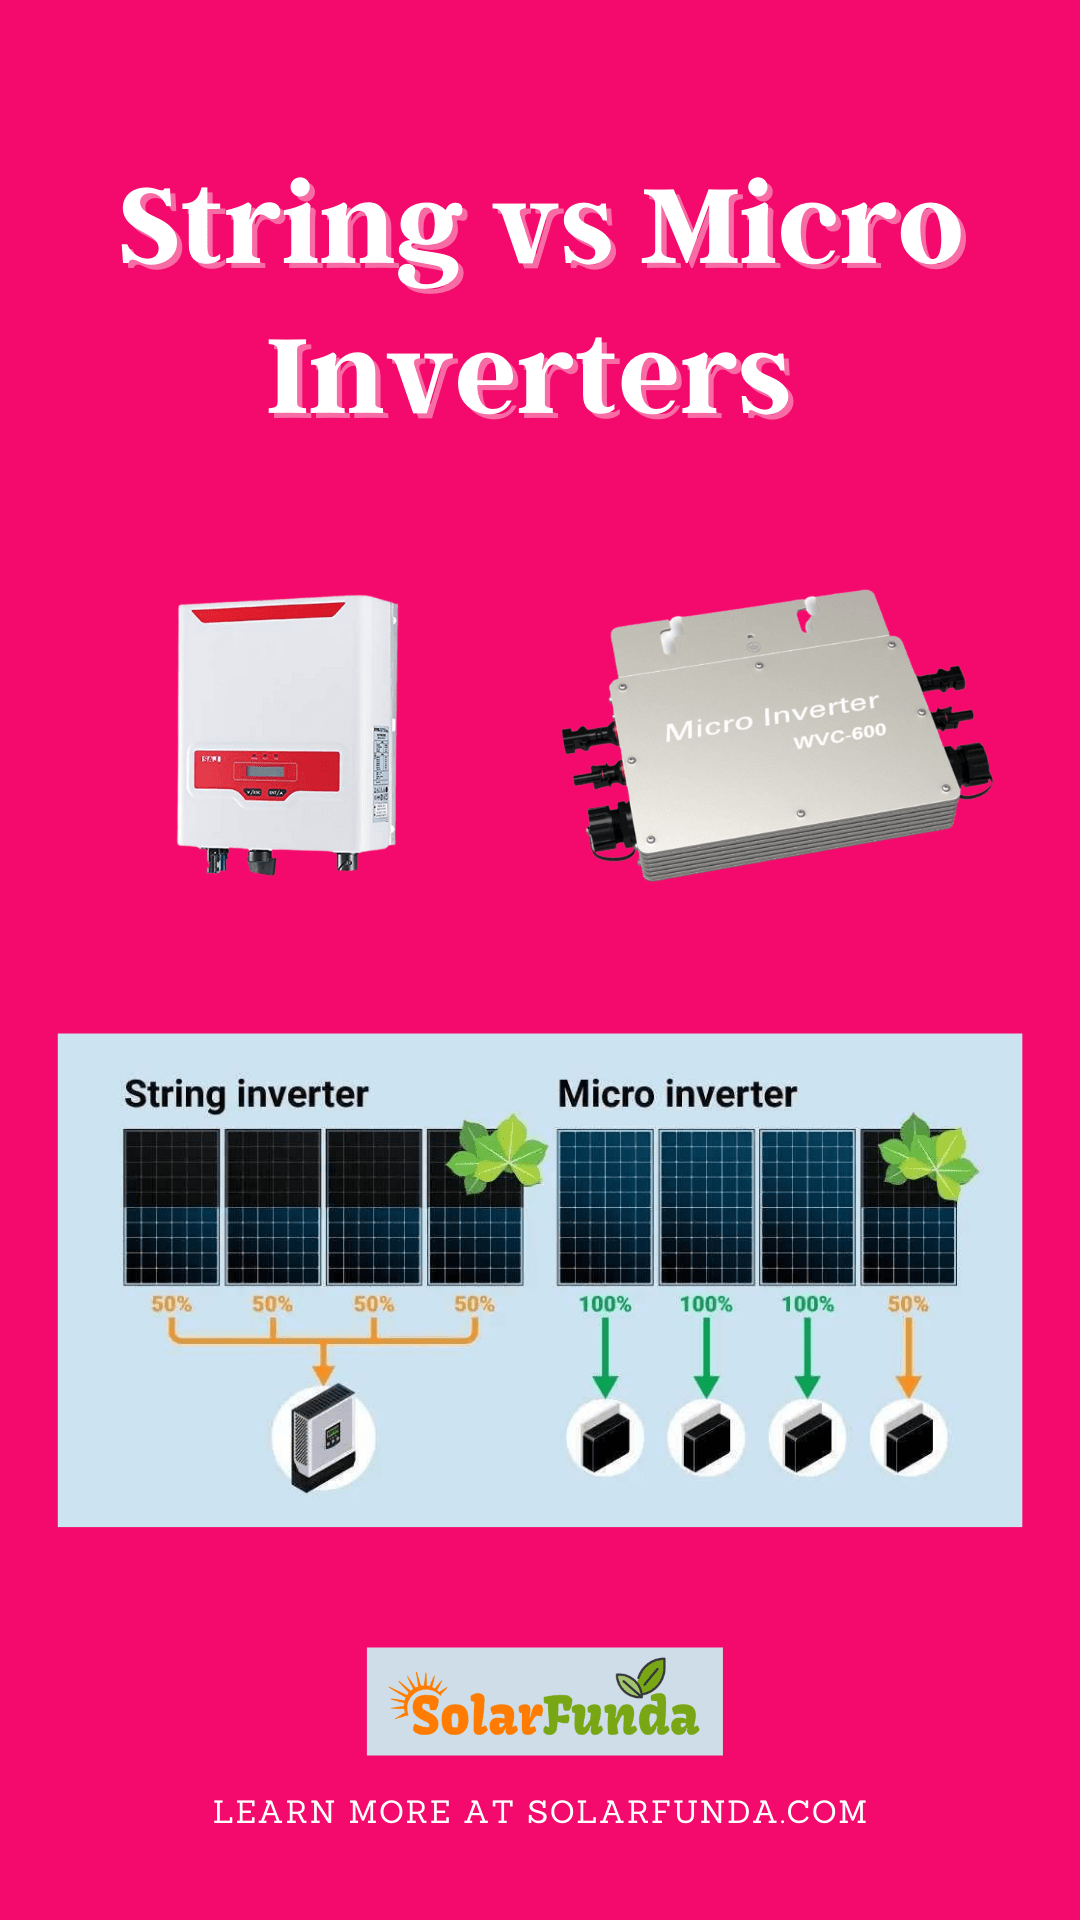 String vs Micro Inverters